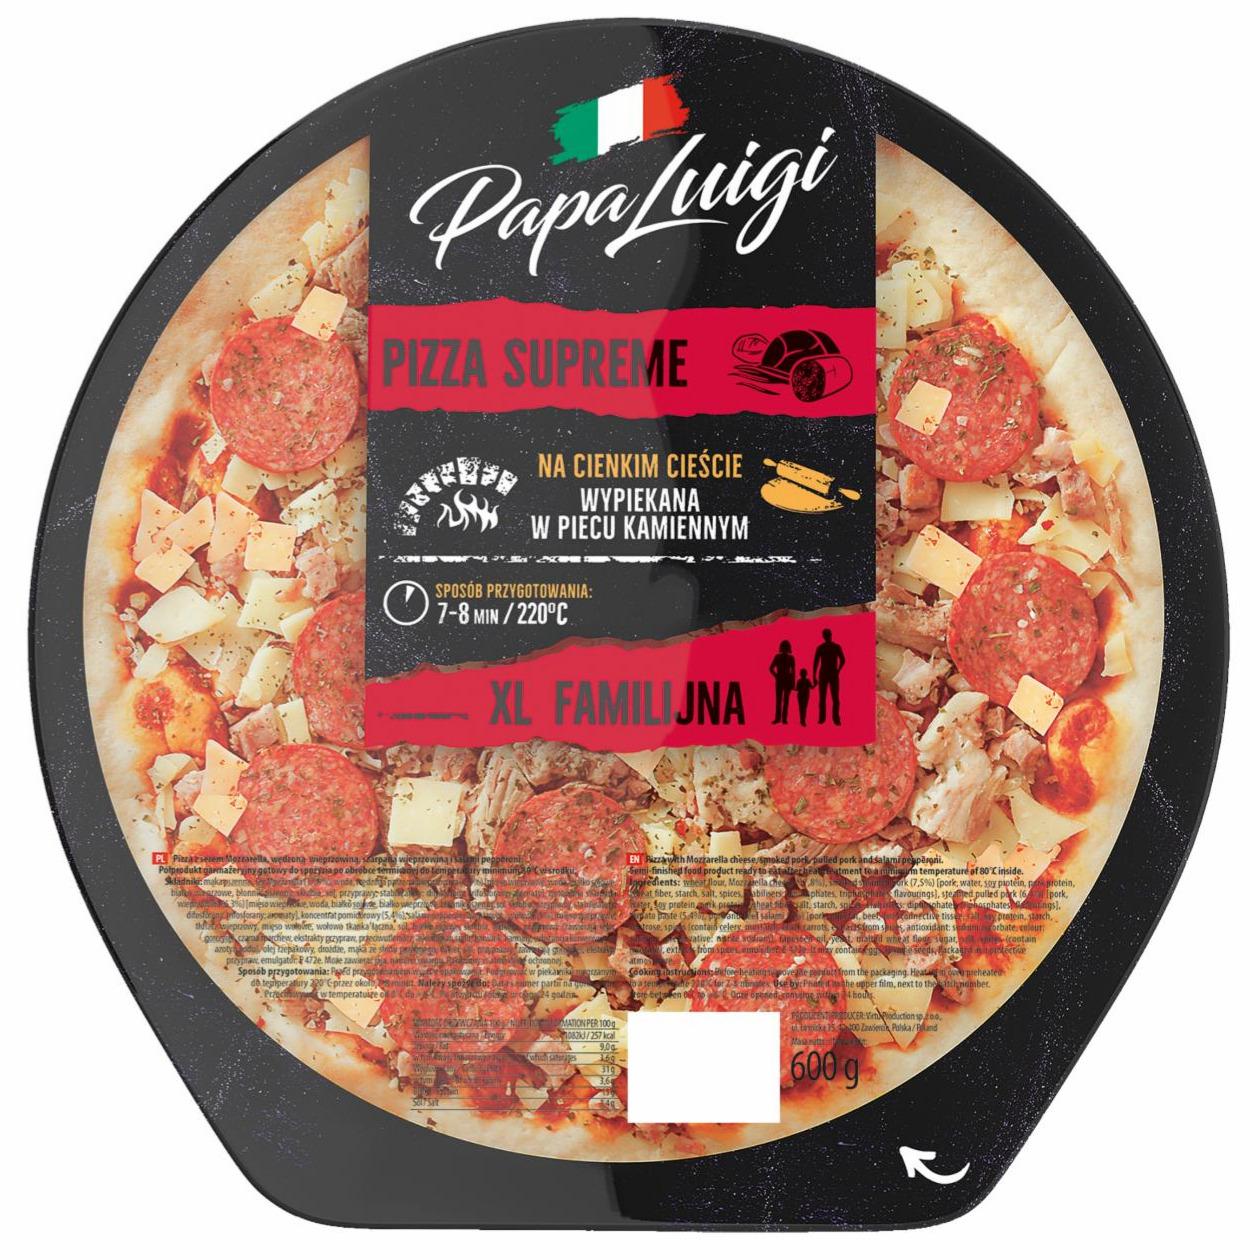 Zdjęcia - Papa Luigi Pizza supreme 600 g